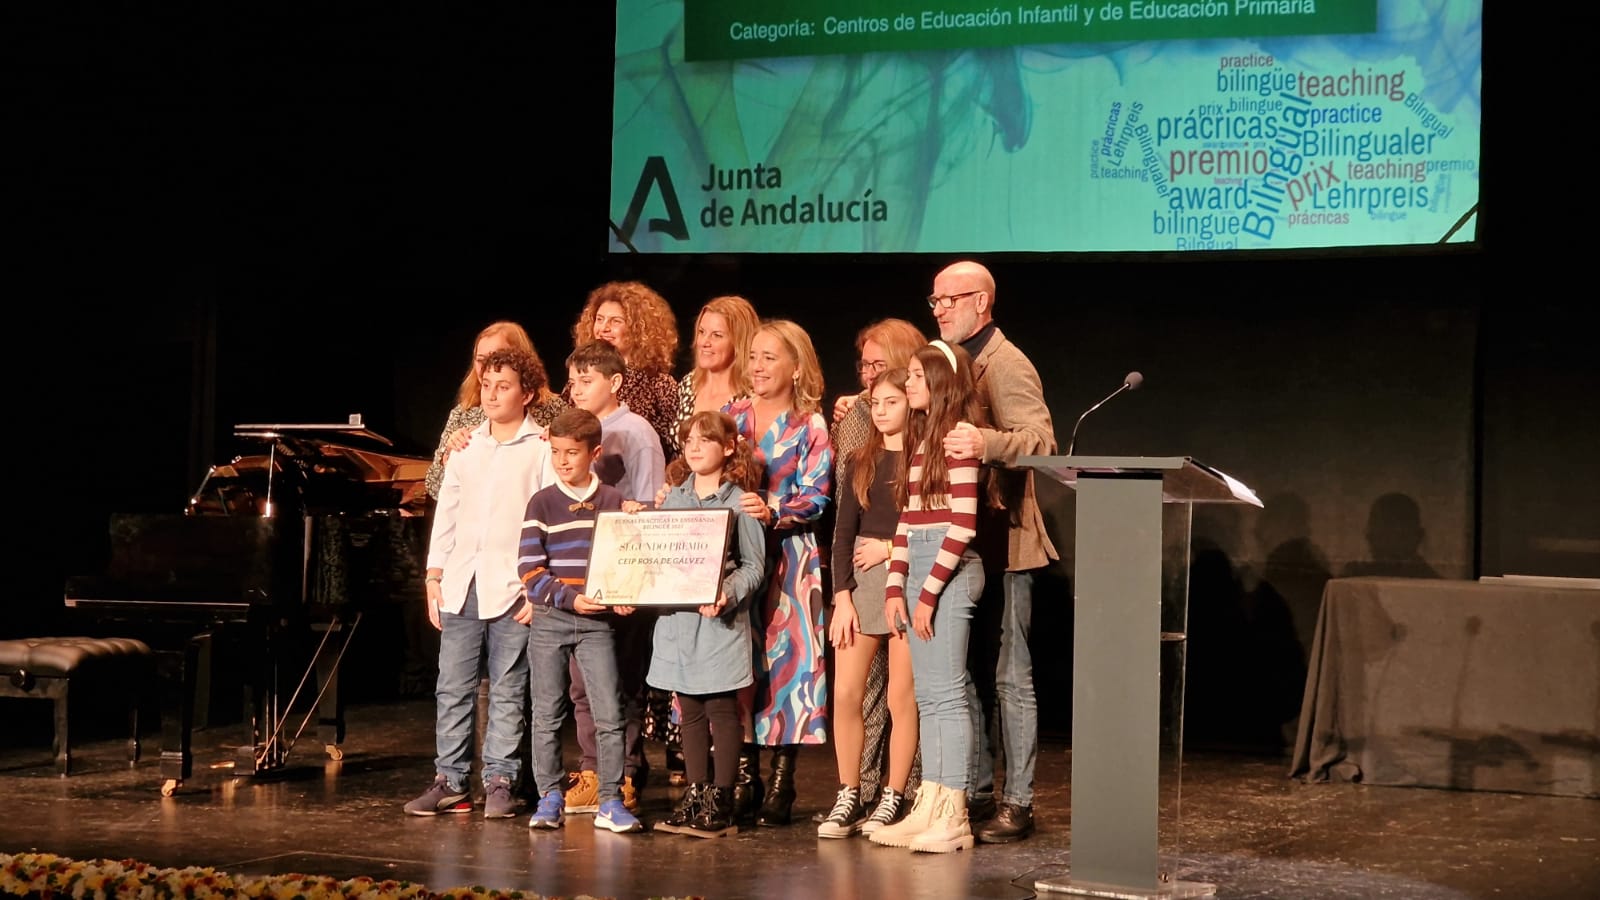 Un colegio y un instituto de Málaga, premiados por sus buenas prácticas en bilingüismo